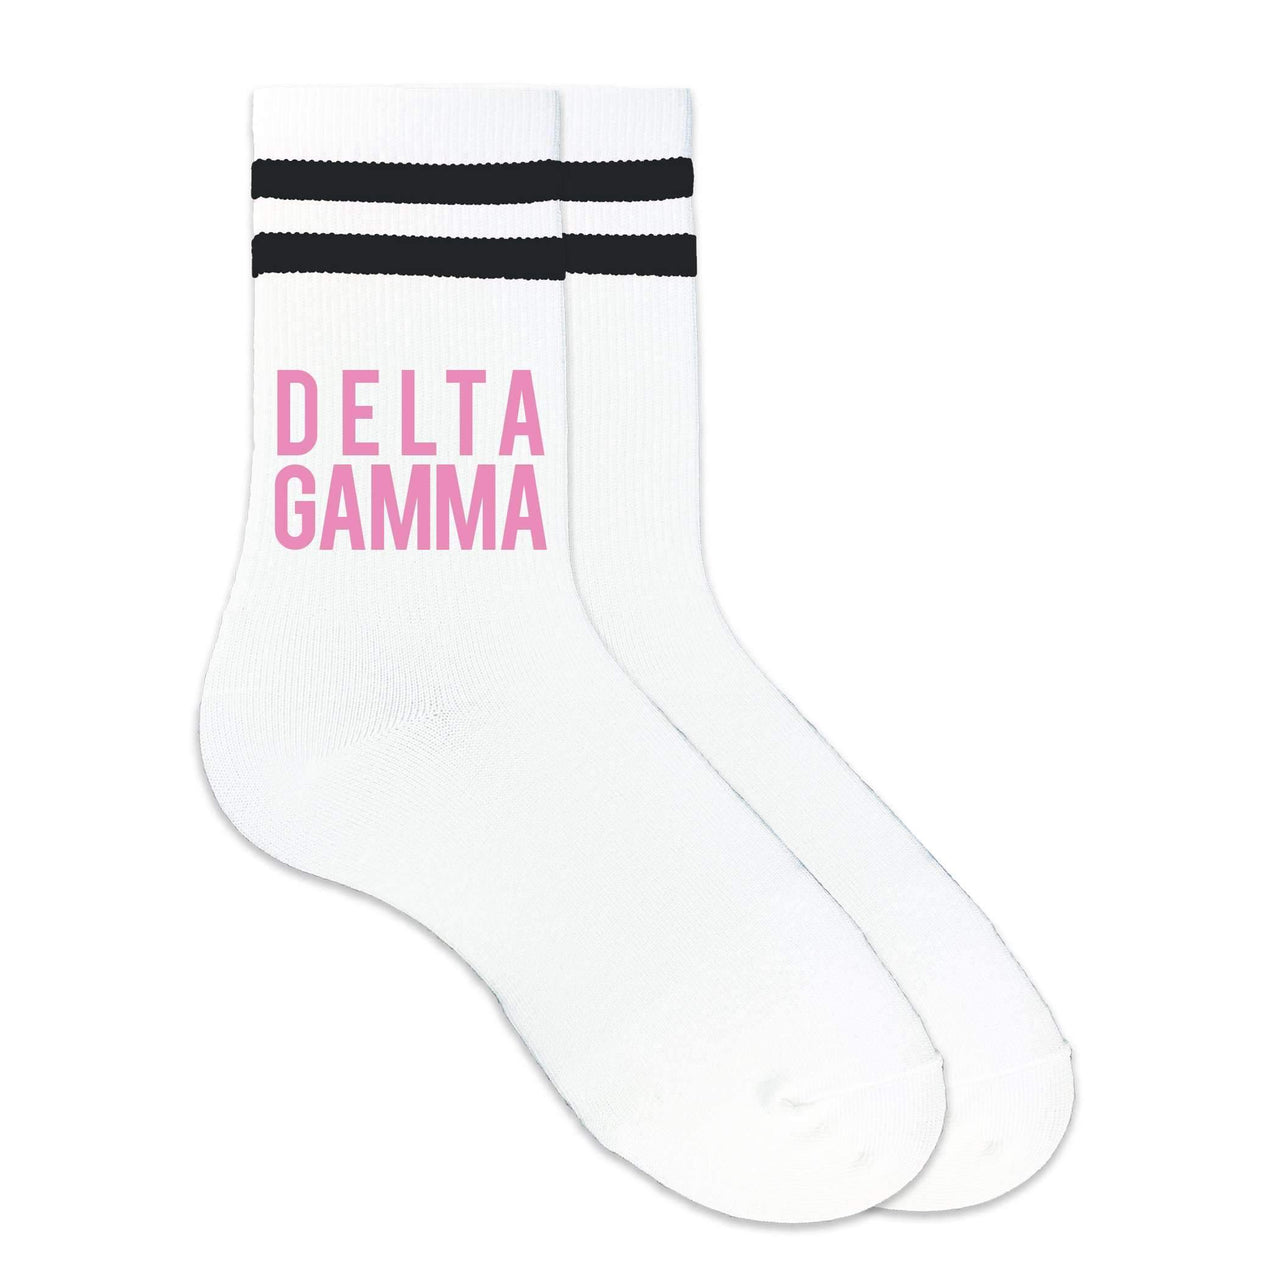 Delta Gamma sorority name custom printed in sorority colors on black striped crew socks